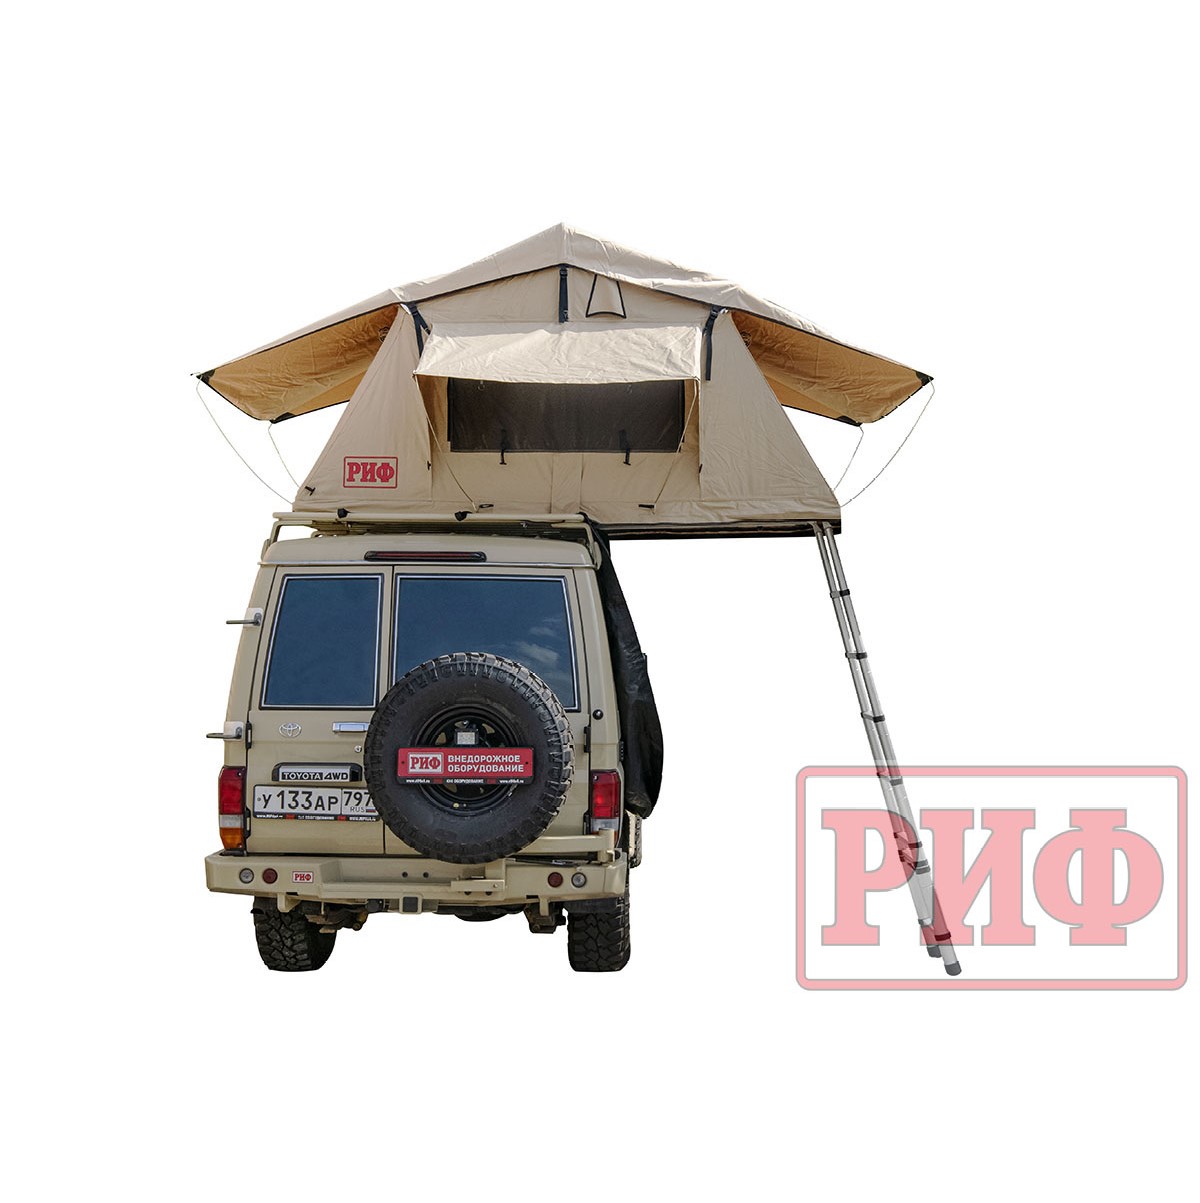 Палатка на крышу автомобиля РИФ Soft RT01-120, тент песочный